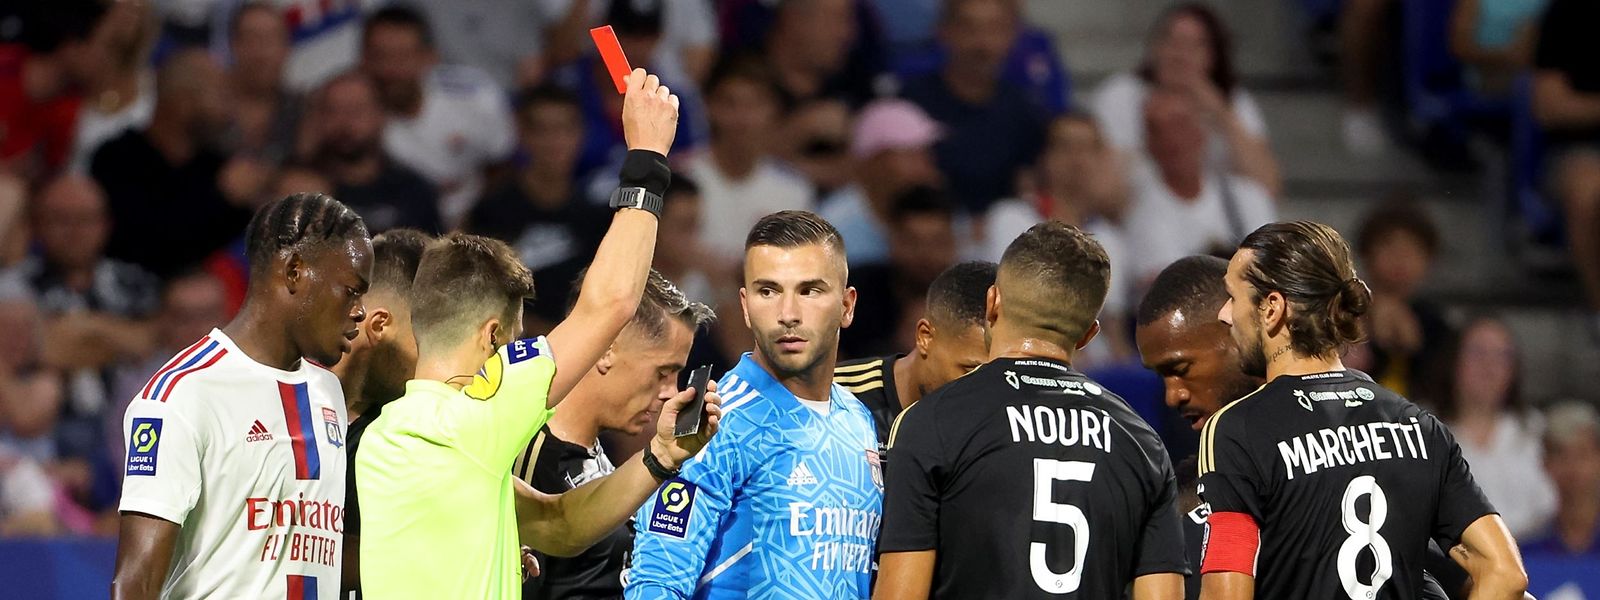 Die Schiedsrichter in der Ligue 1 zeigen die Rote Karte deutlich öfter als in anderen Ländern.